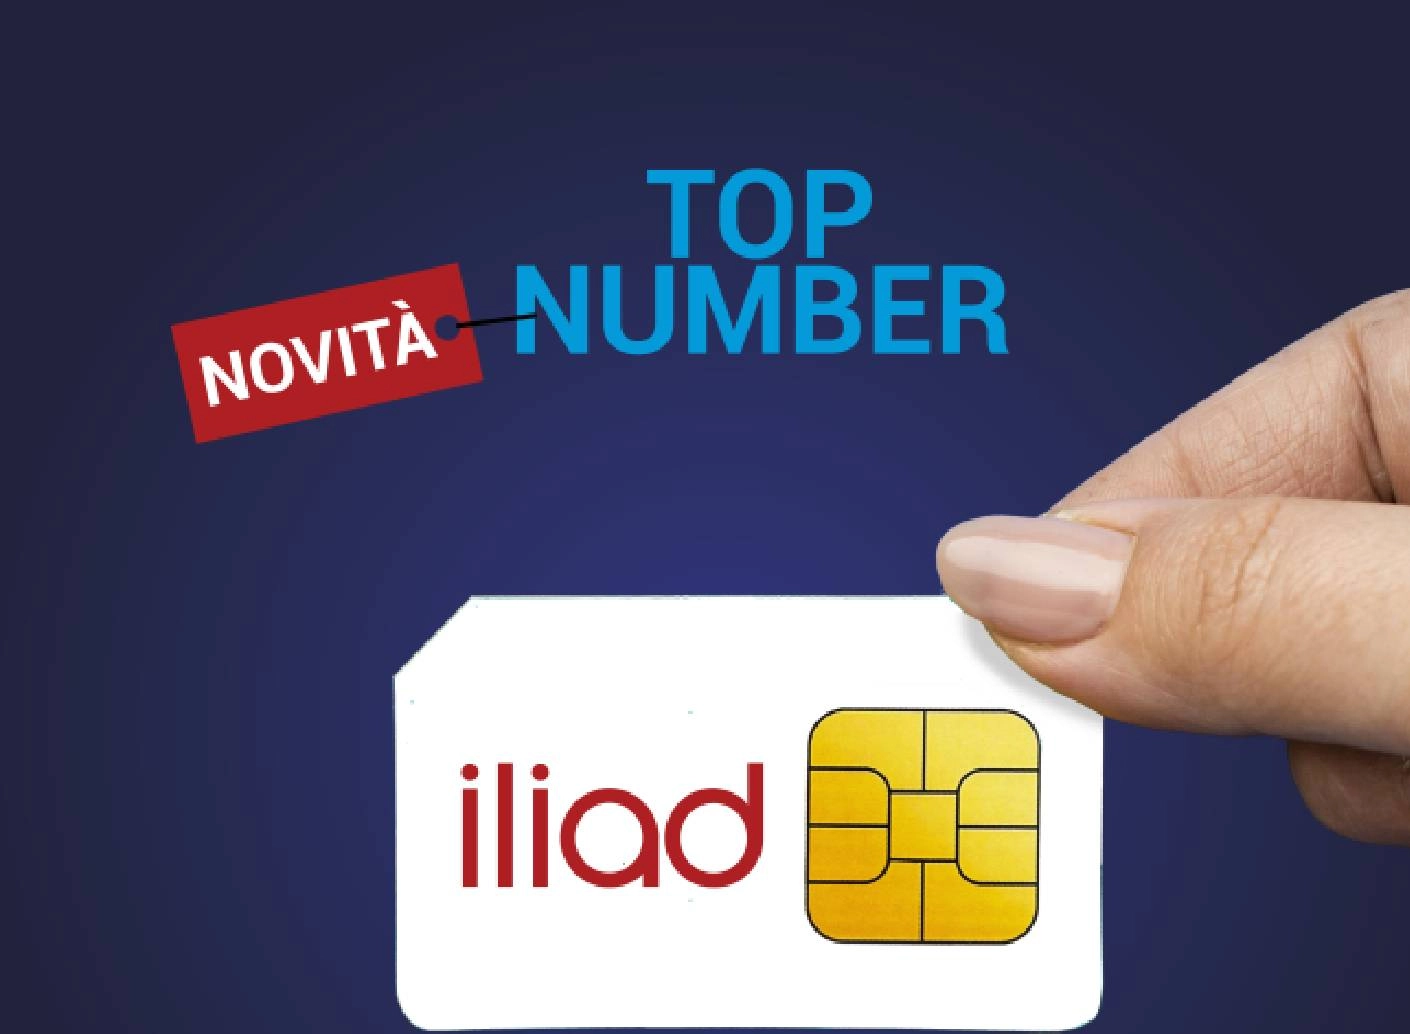 Le Nuove SIM Top Number Iliad sono disponibili!